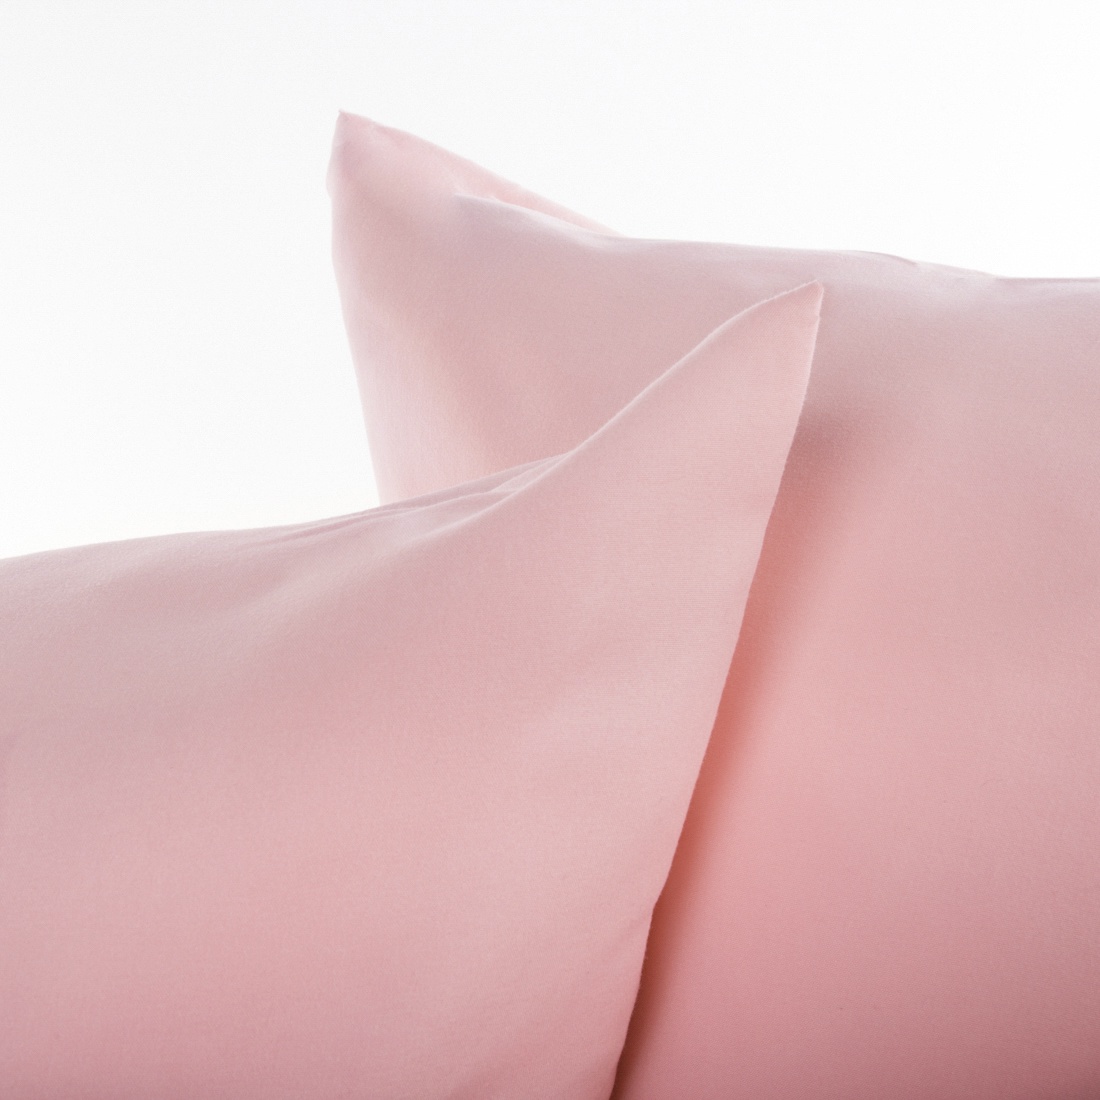 фото Комплект постельного белья 7 АВЕНЮ Лето, коричневый, светло-розовый